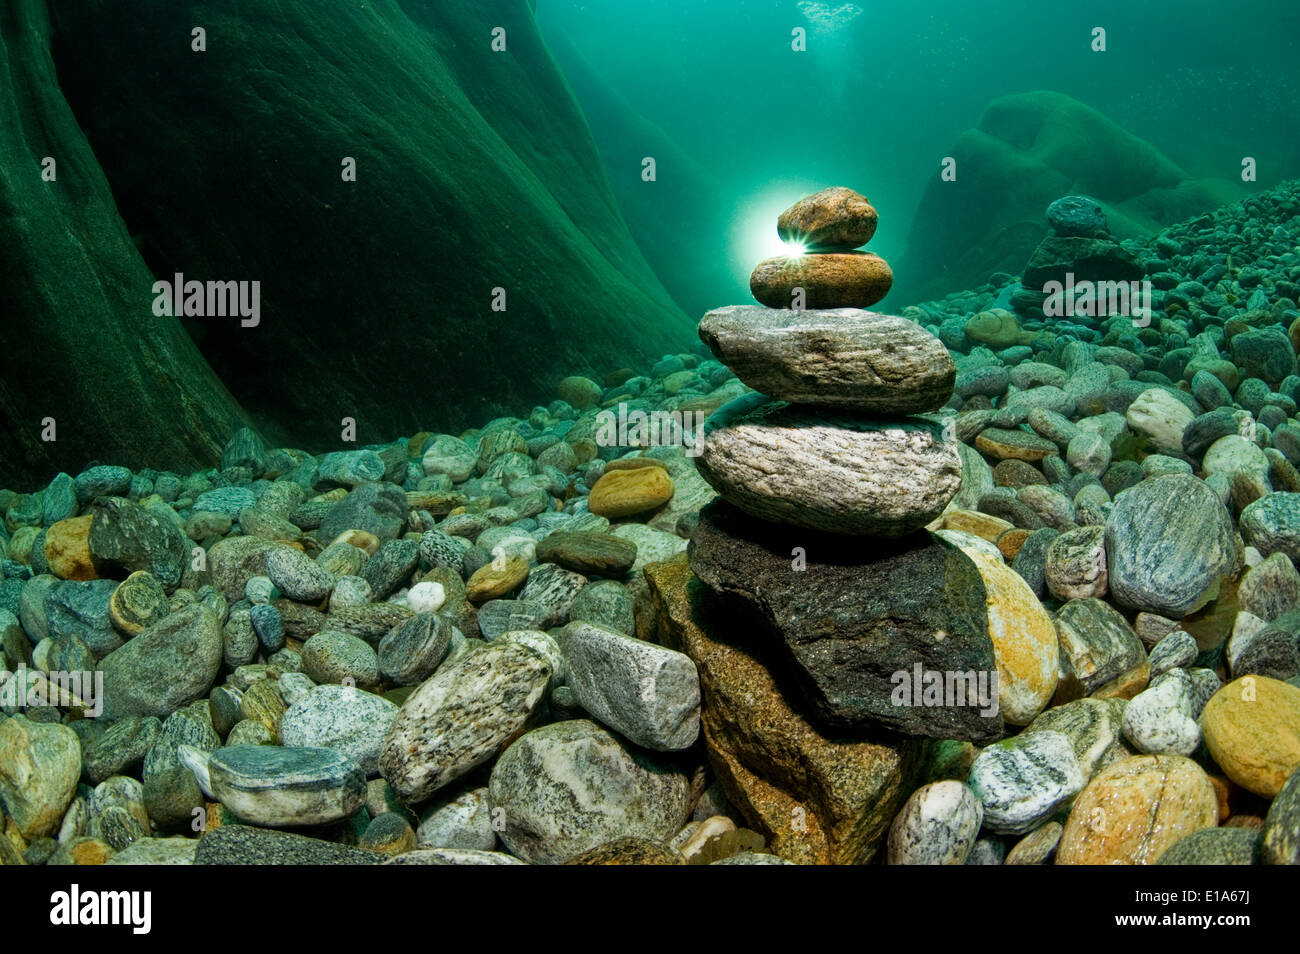 underwater picture from the river Verzasca, Lavertezzo, Valle Verzasca, Ticino, Switzerland Stock Photo